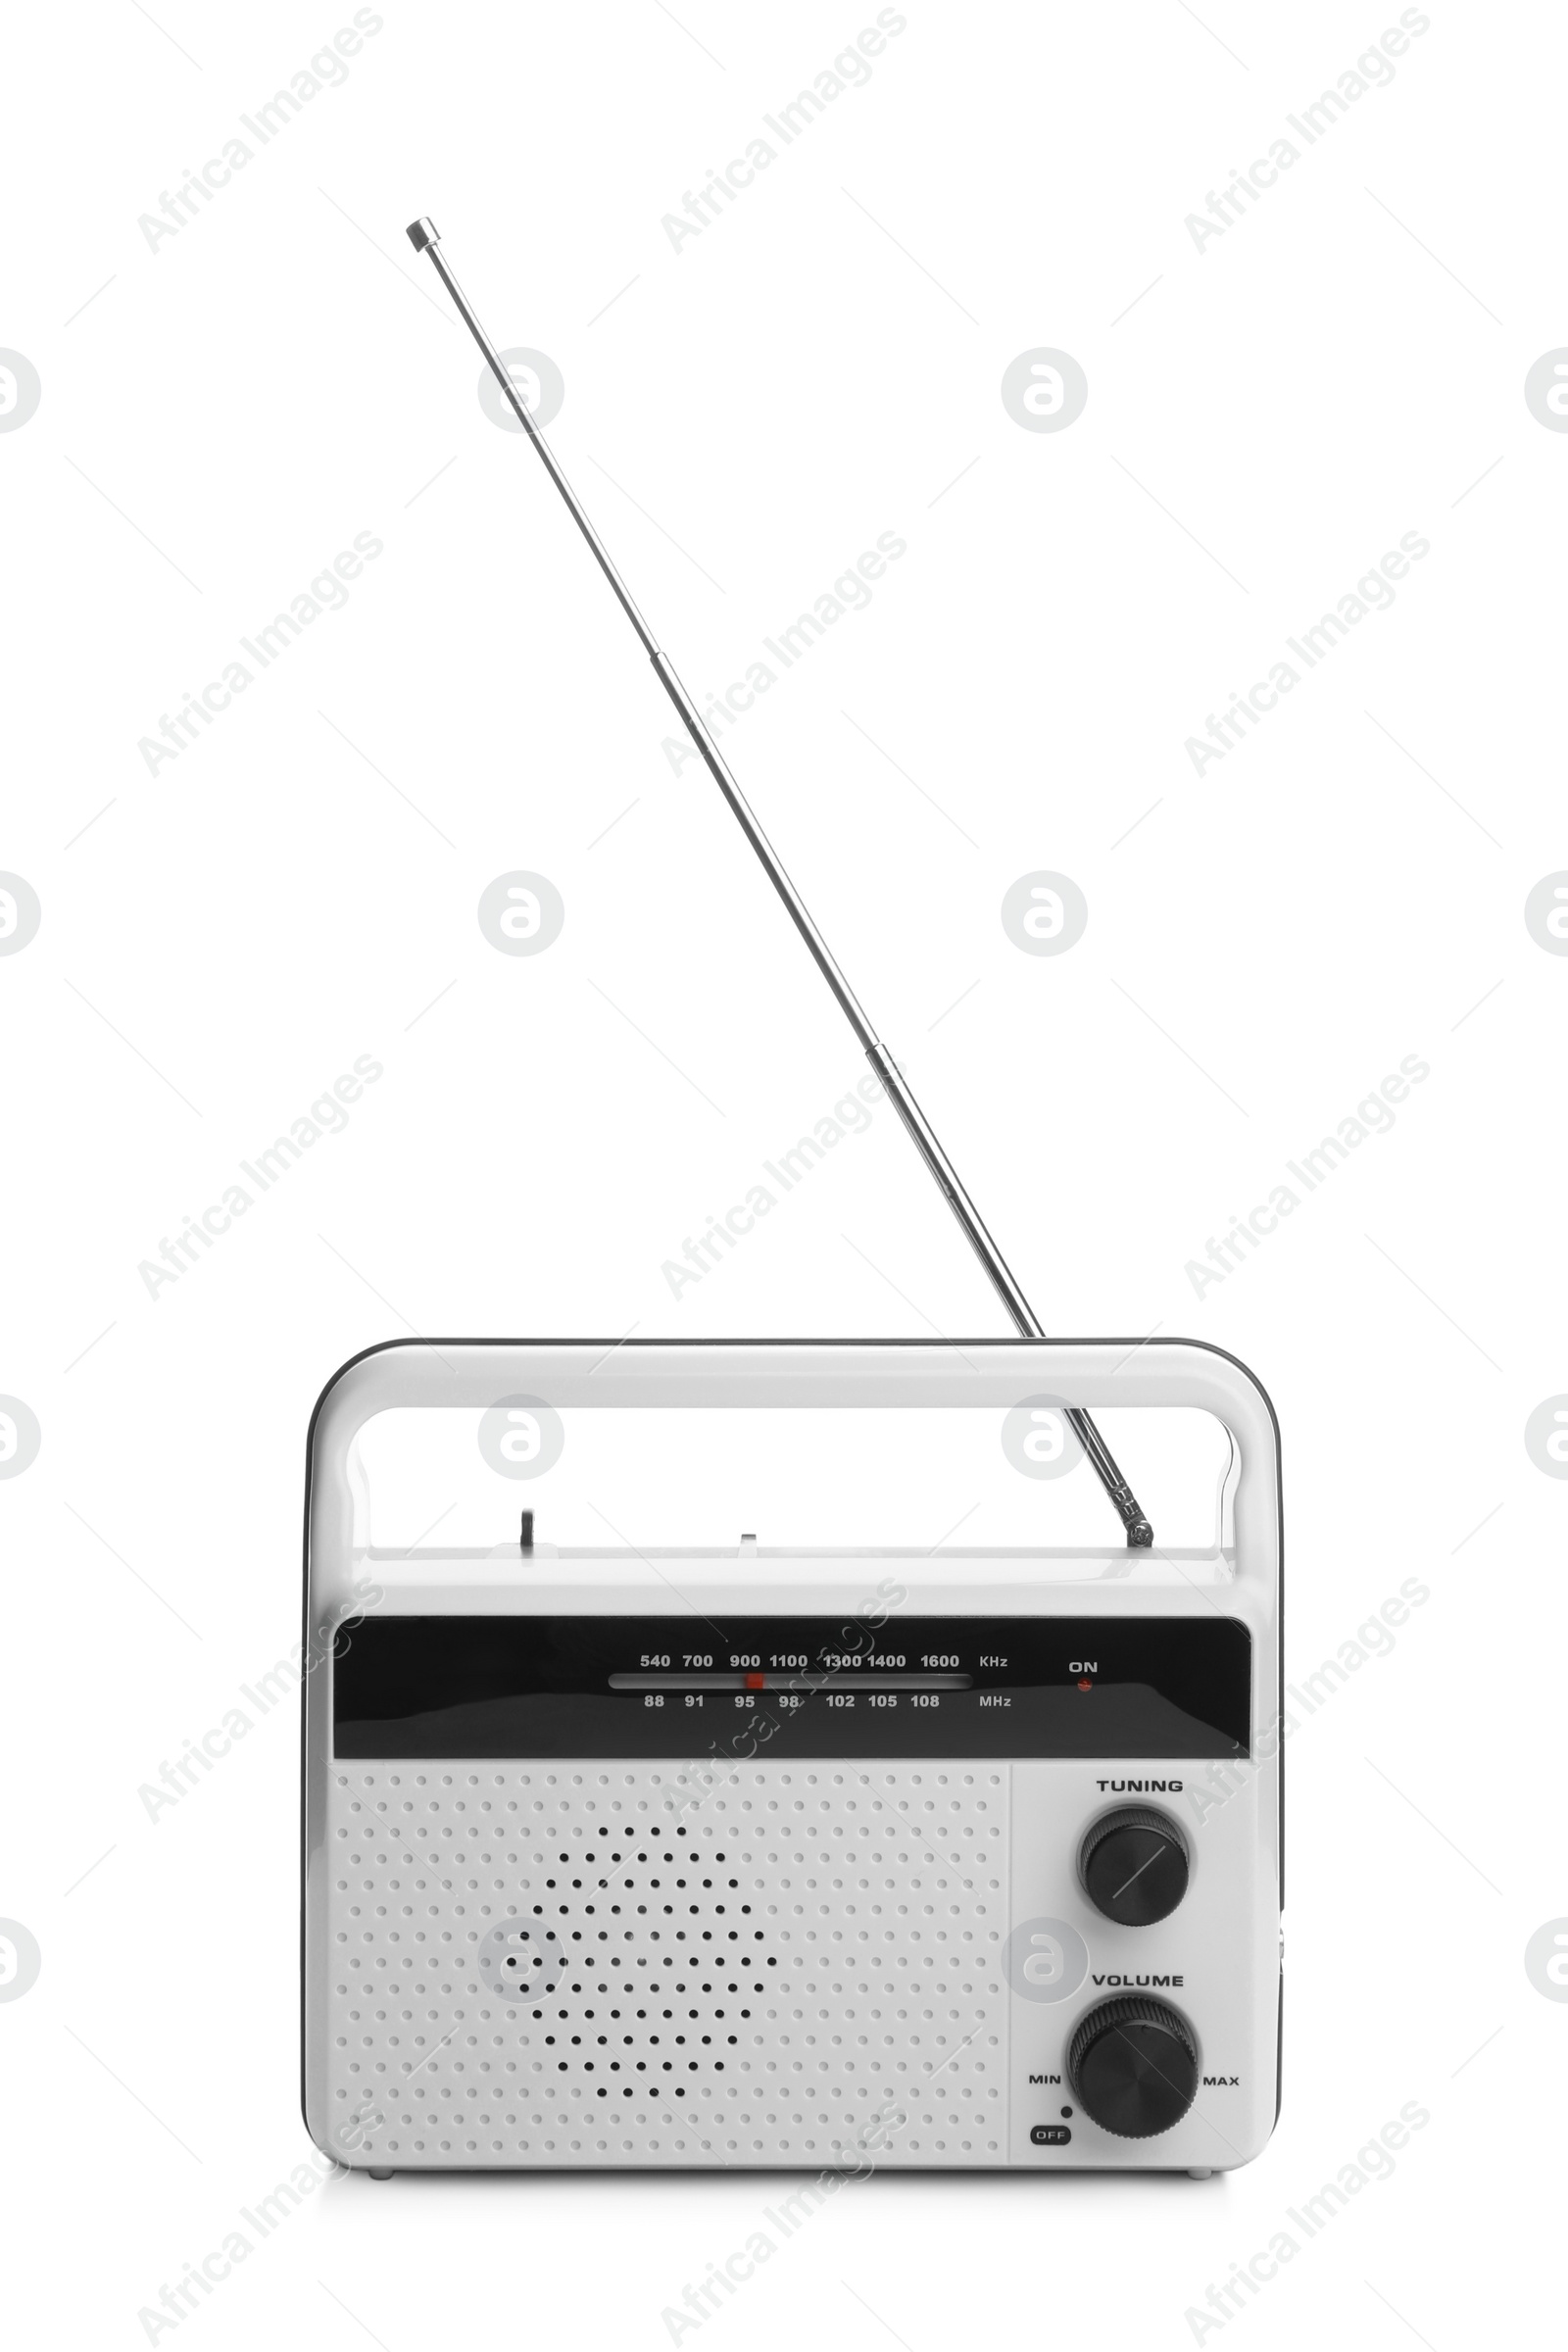 Photo of Portable retro radio receiver isolated on white